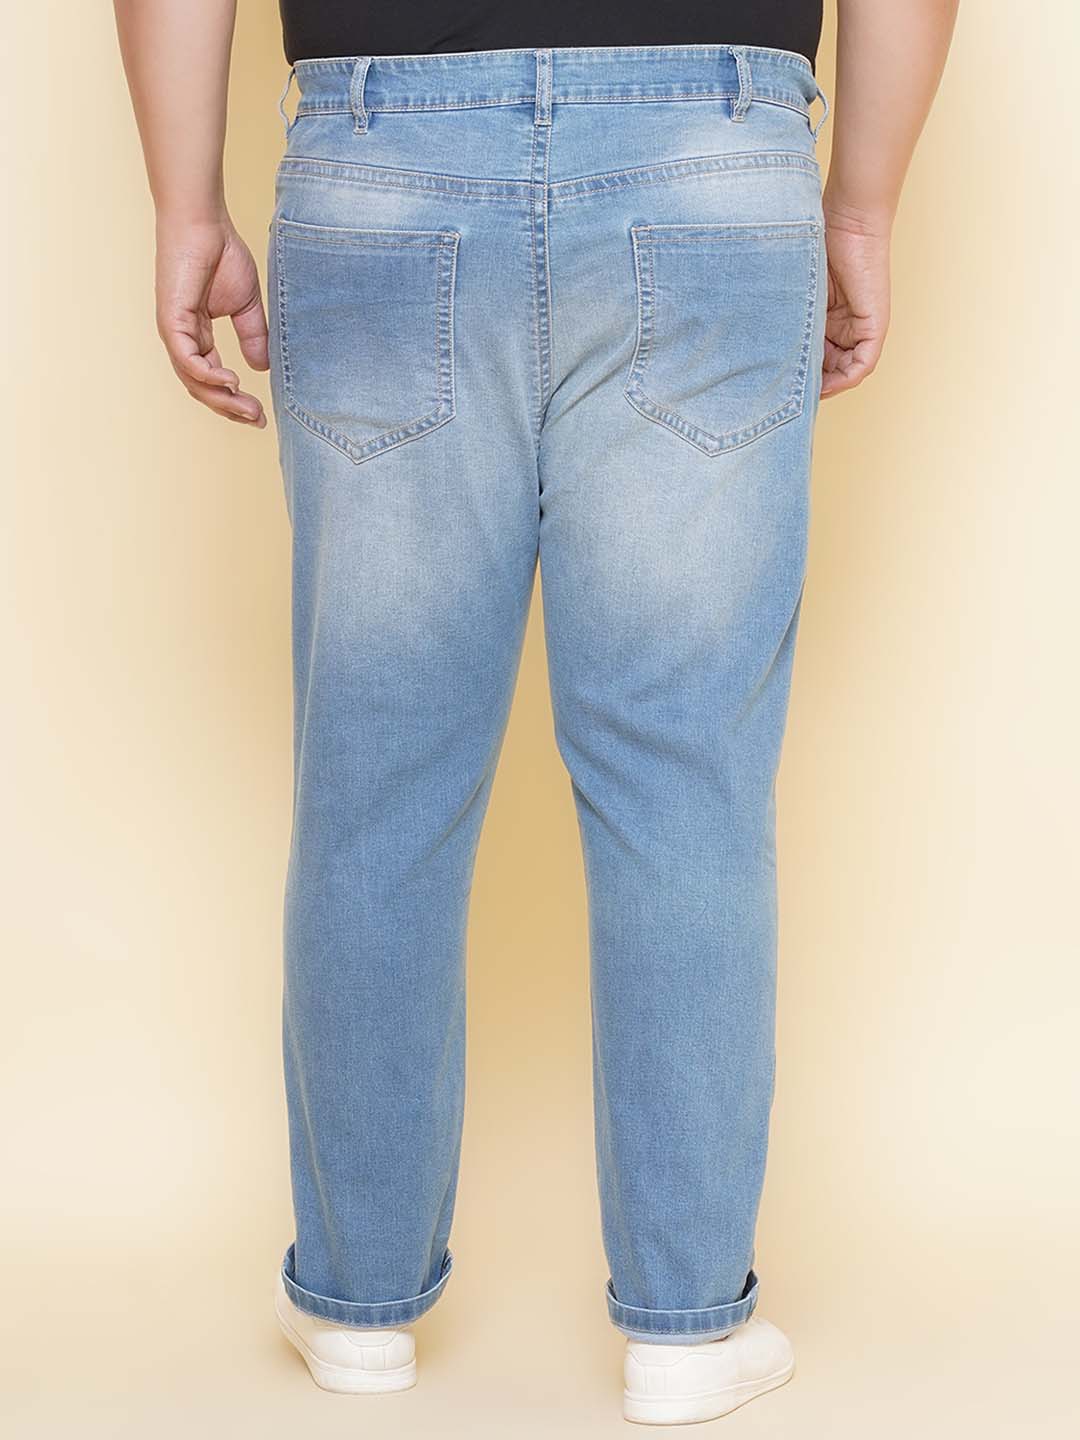 bottomwear/jeans/JPJ27097/jpj27097-5.jpg